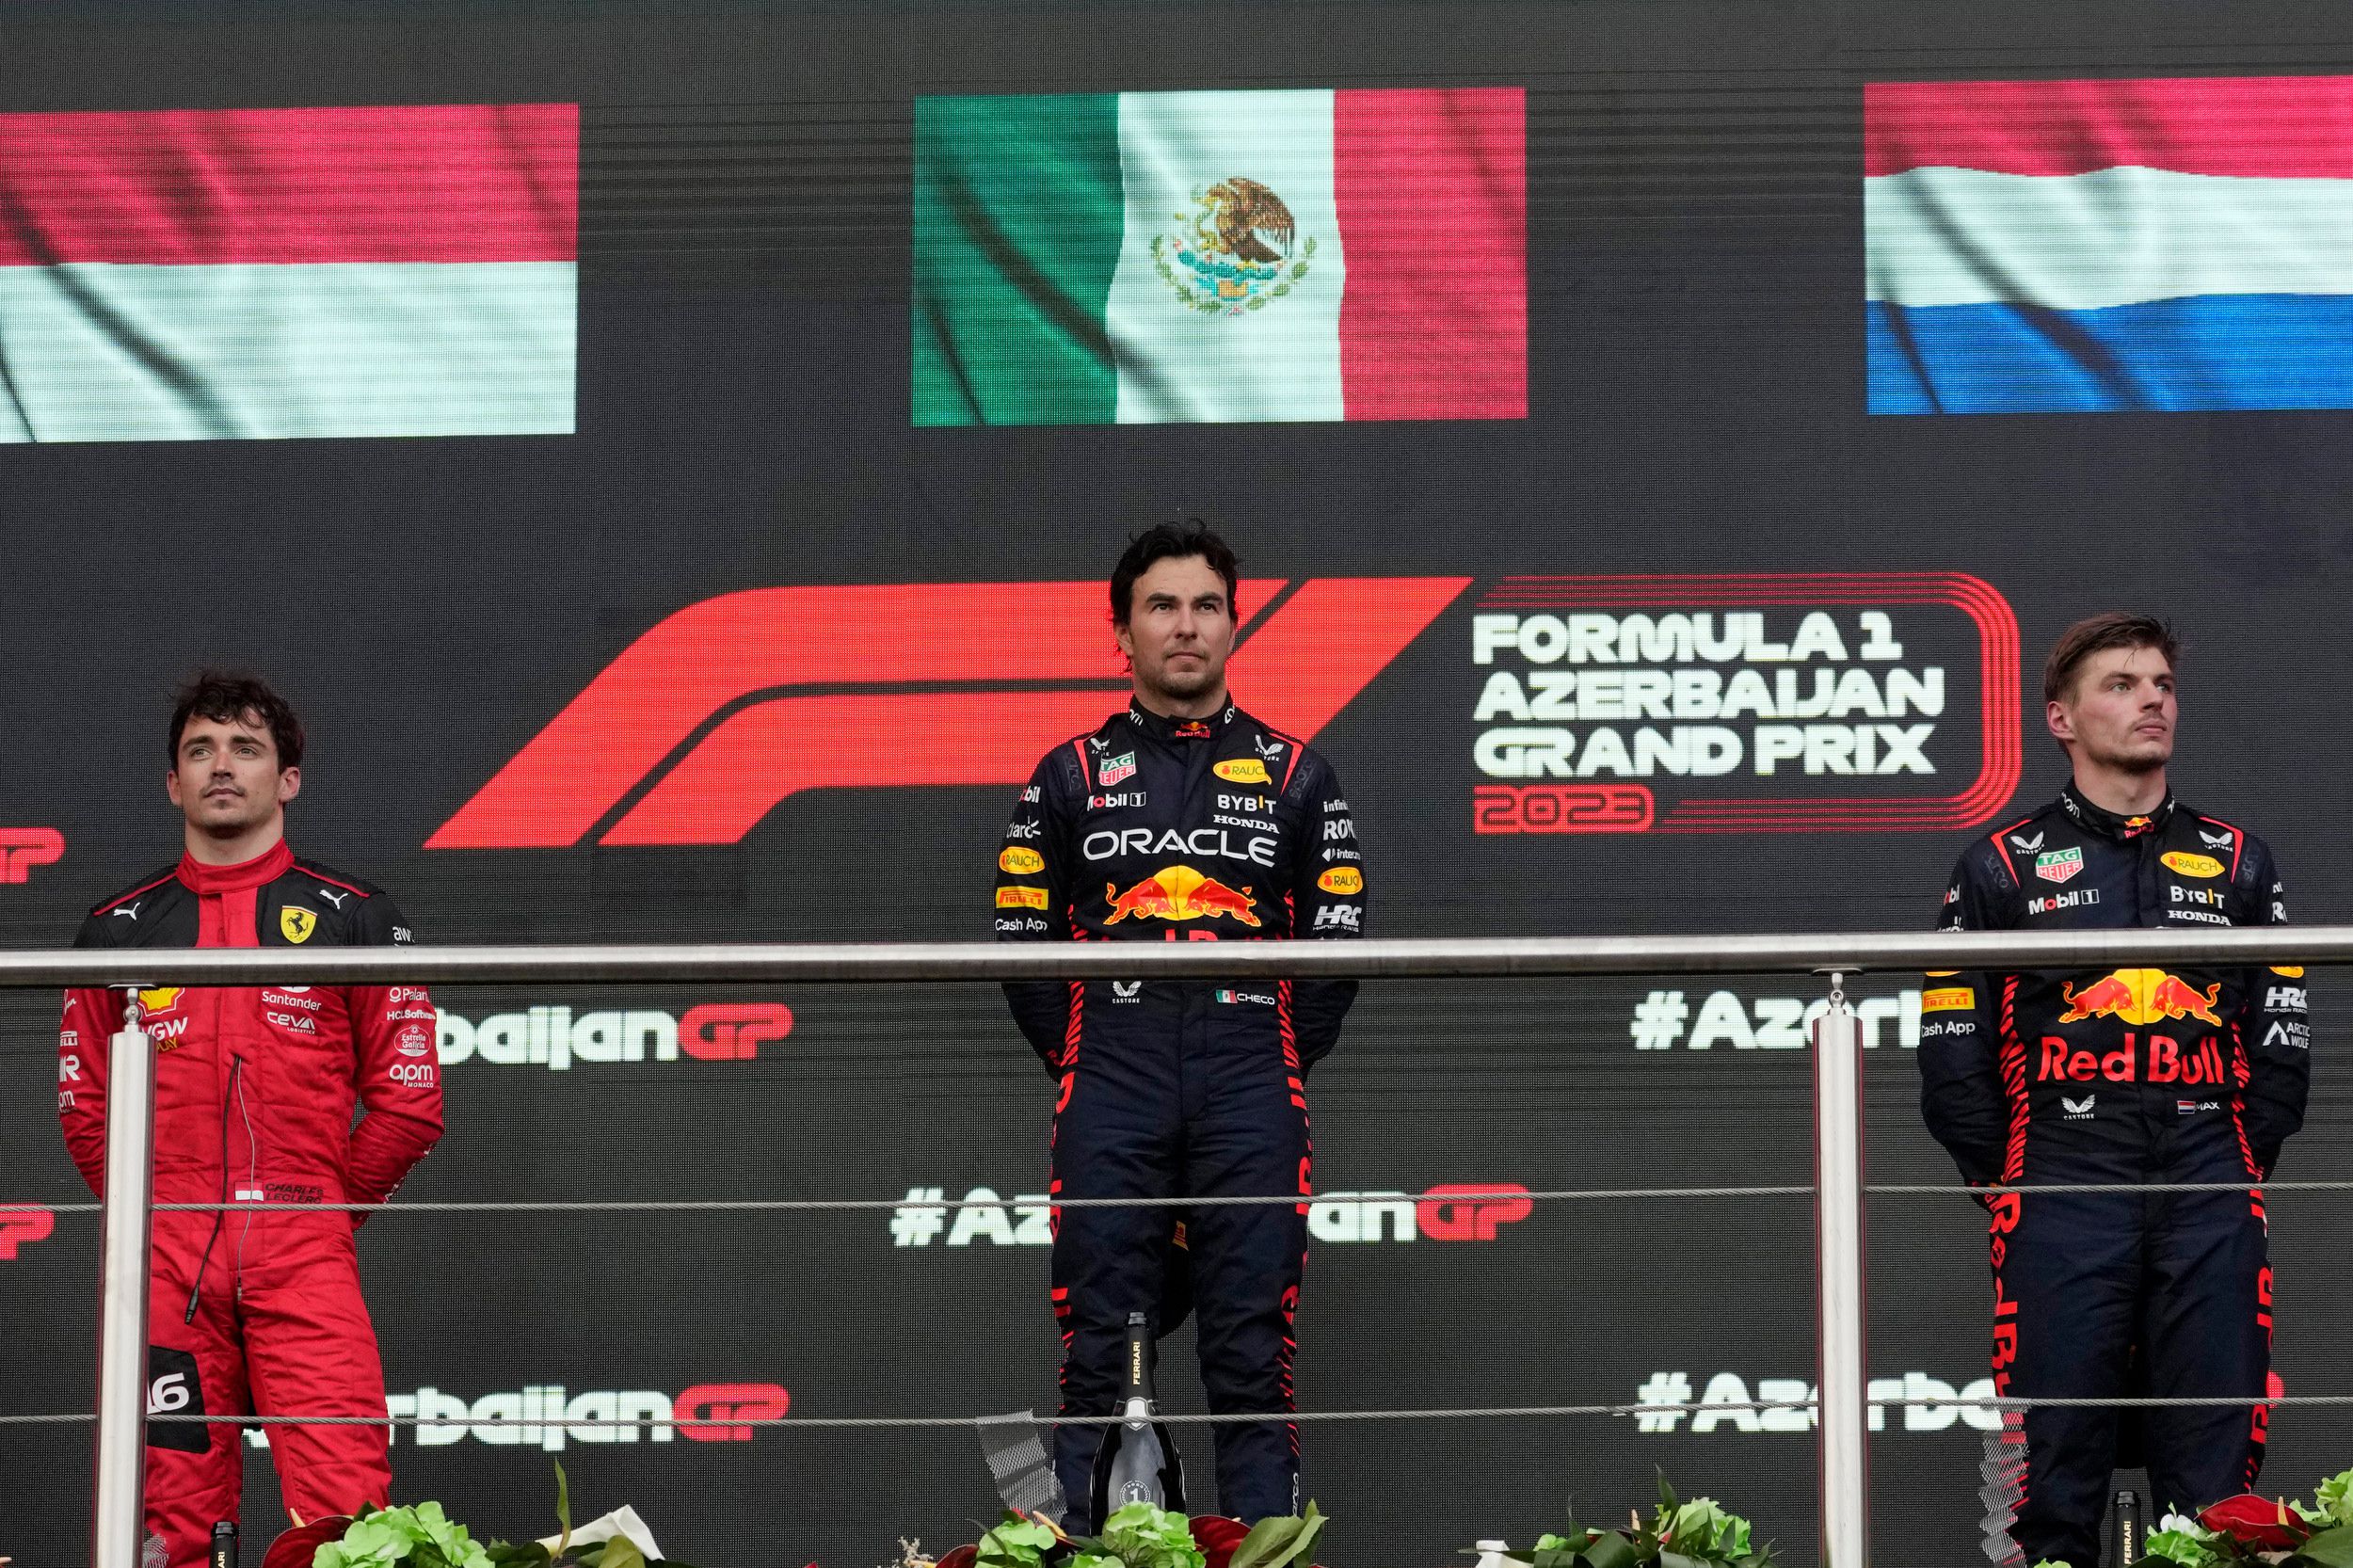 El podio del Gran Premio de Azerbaiyán, donde ganó Sergio Pérez escoltado por Max Verstappen y Charles Leclerc (éstos están invertidos en sus lugares), bien puede repetirse este domingo en Miami.